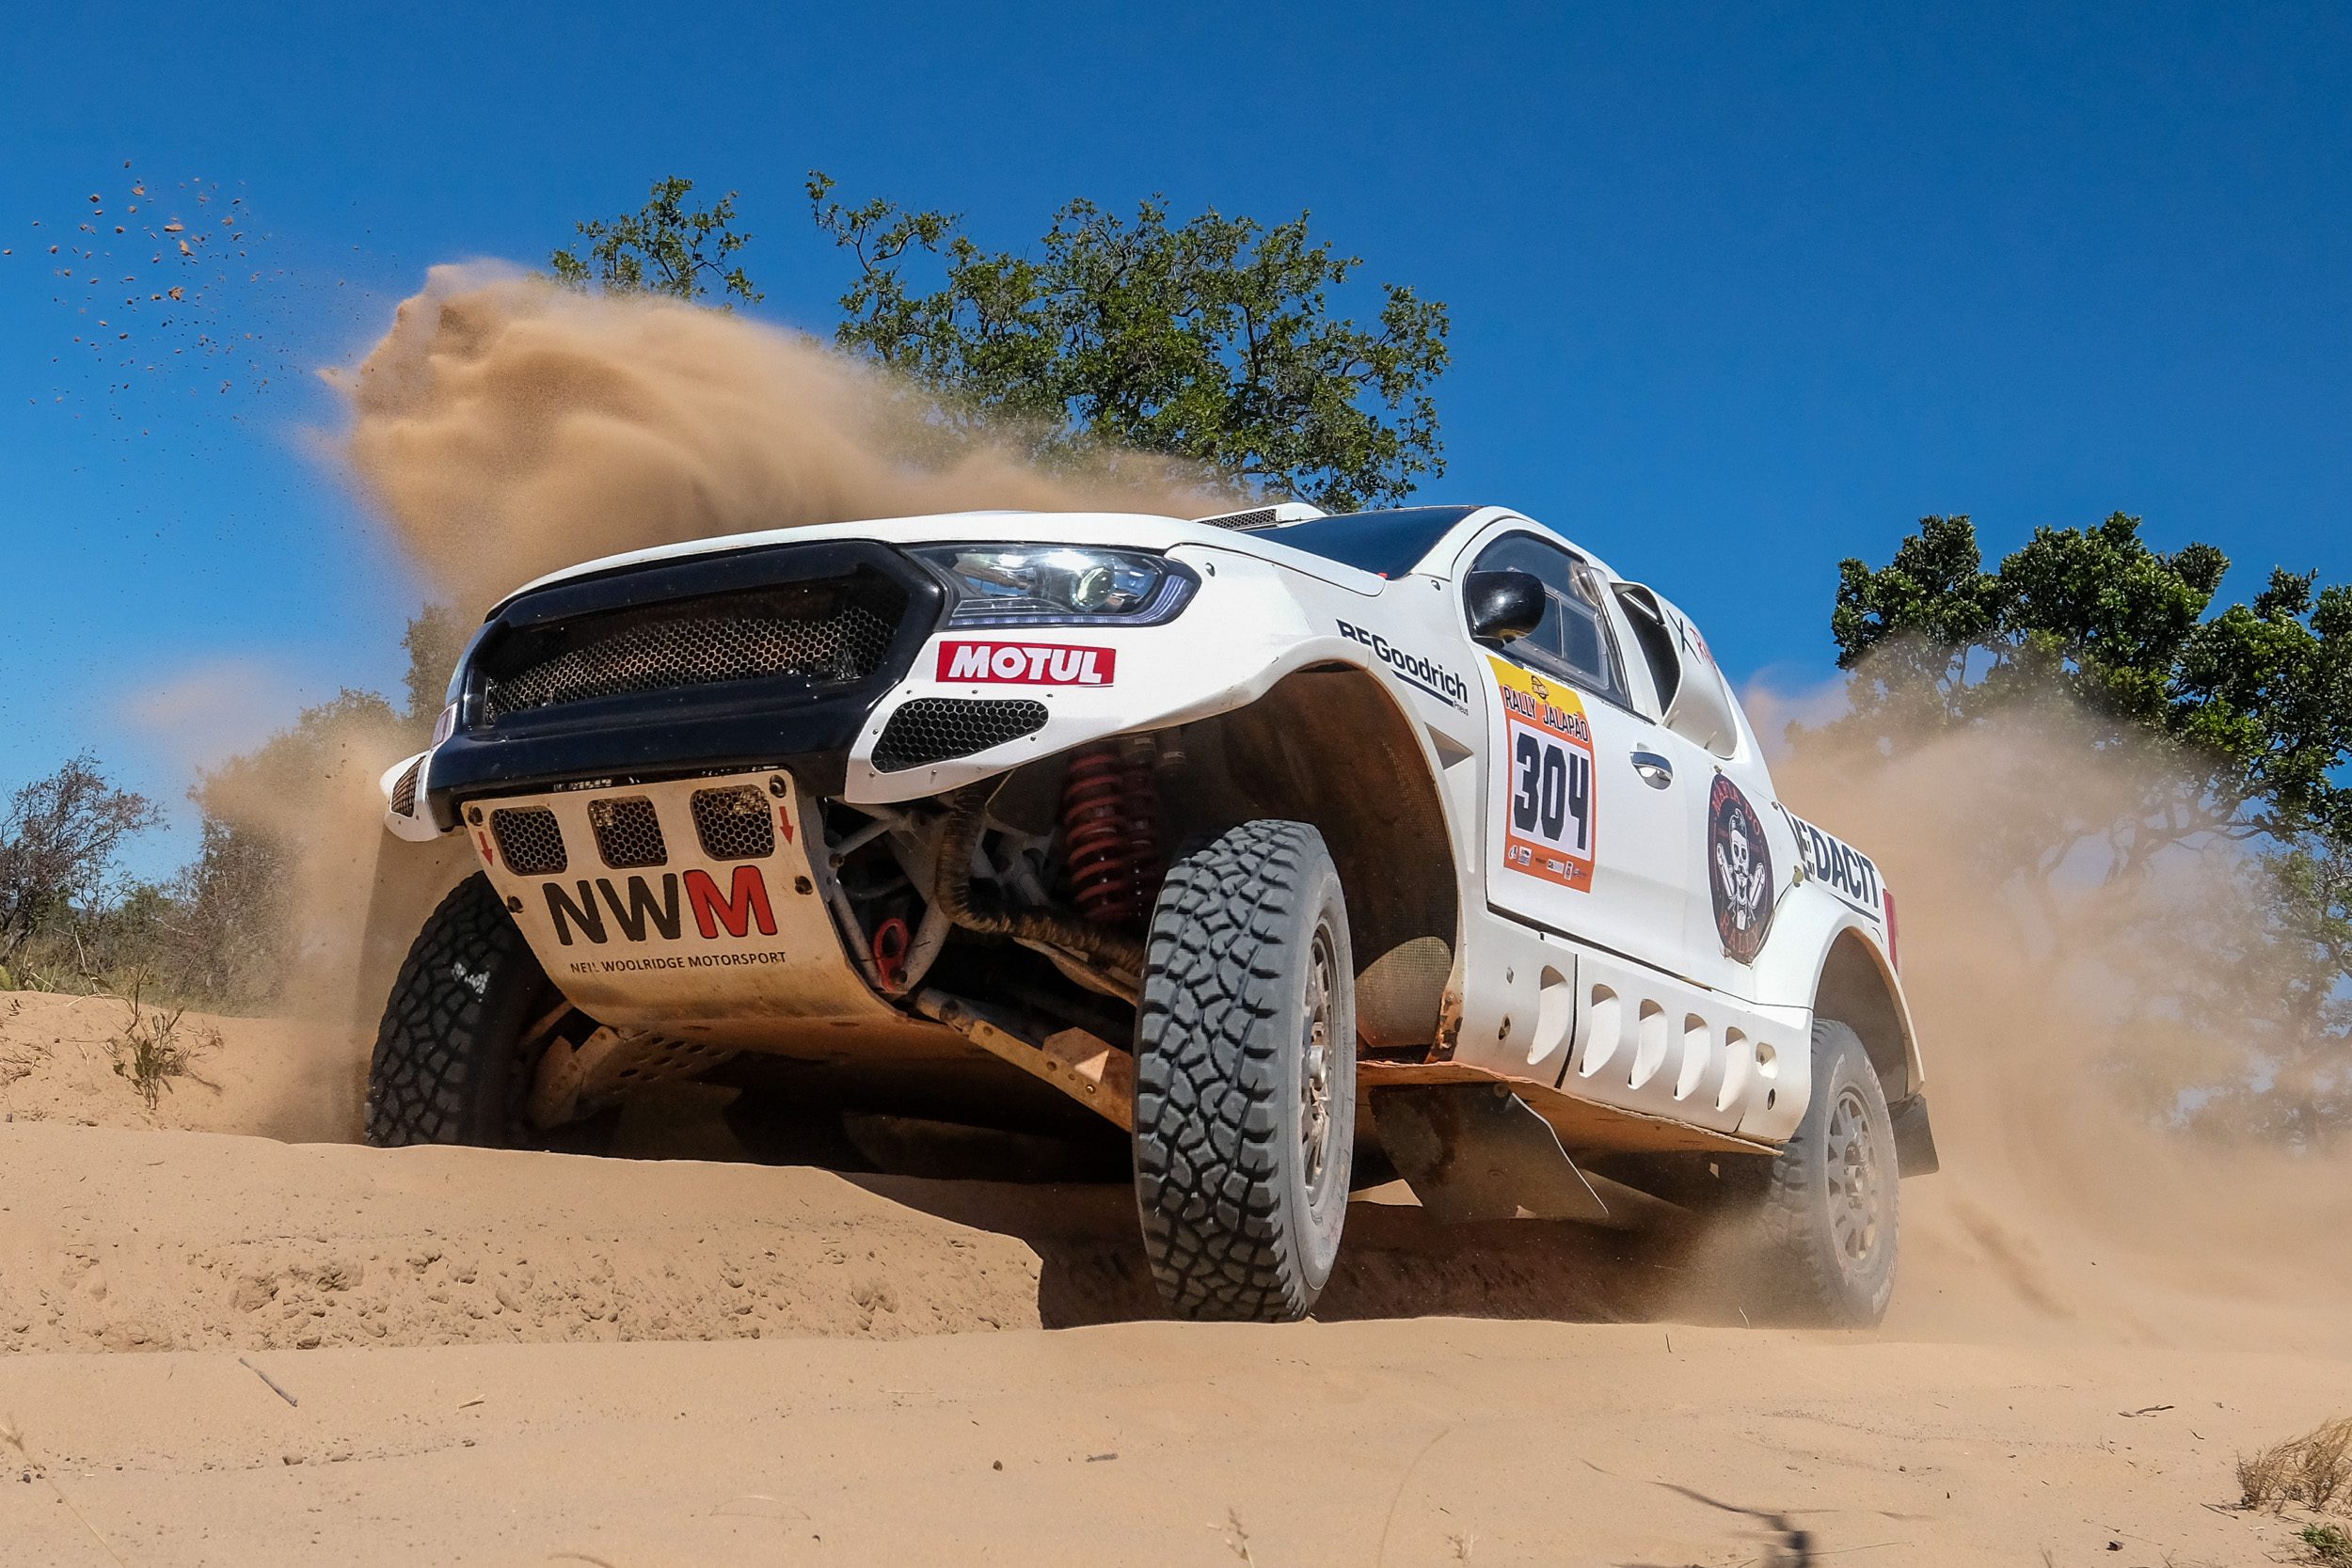 O Rally Jalapão faz parte do Campeonato Brasileiro de Rally Cross Country (Doni Castilho / DFotos)